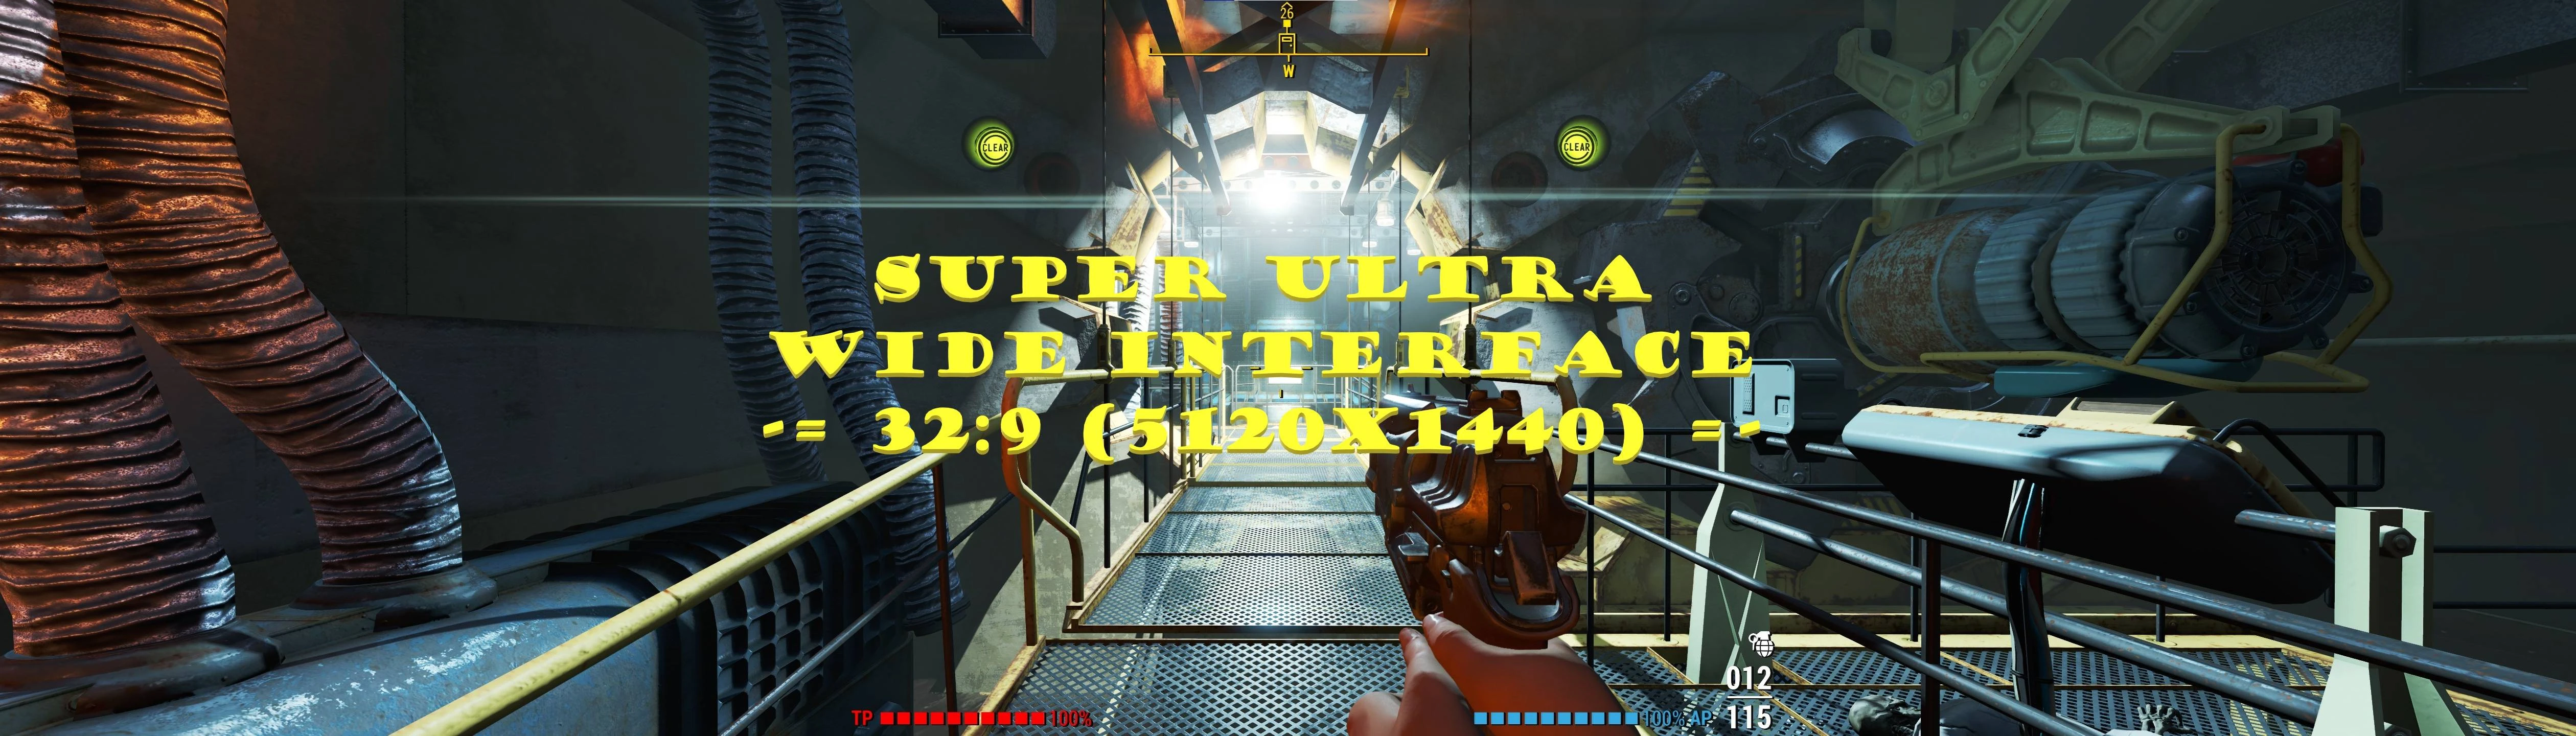 Cyberpunk 2077 32:9 Ultrawide Wallpaper / Screenshots. (5120x1440